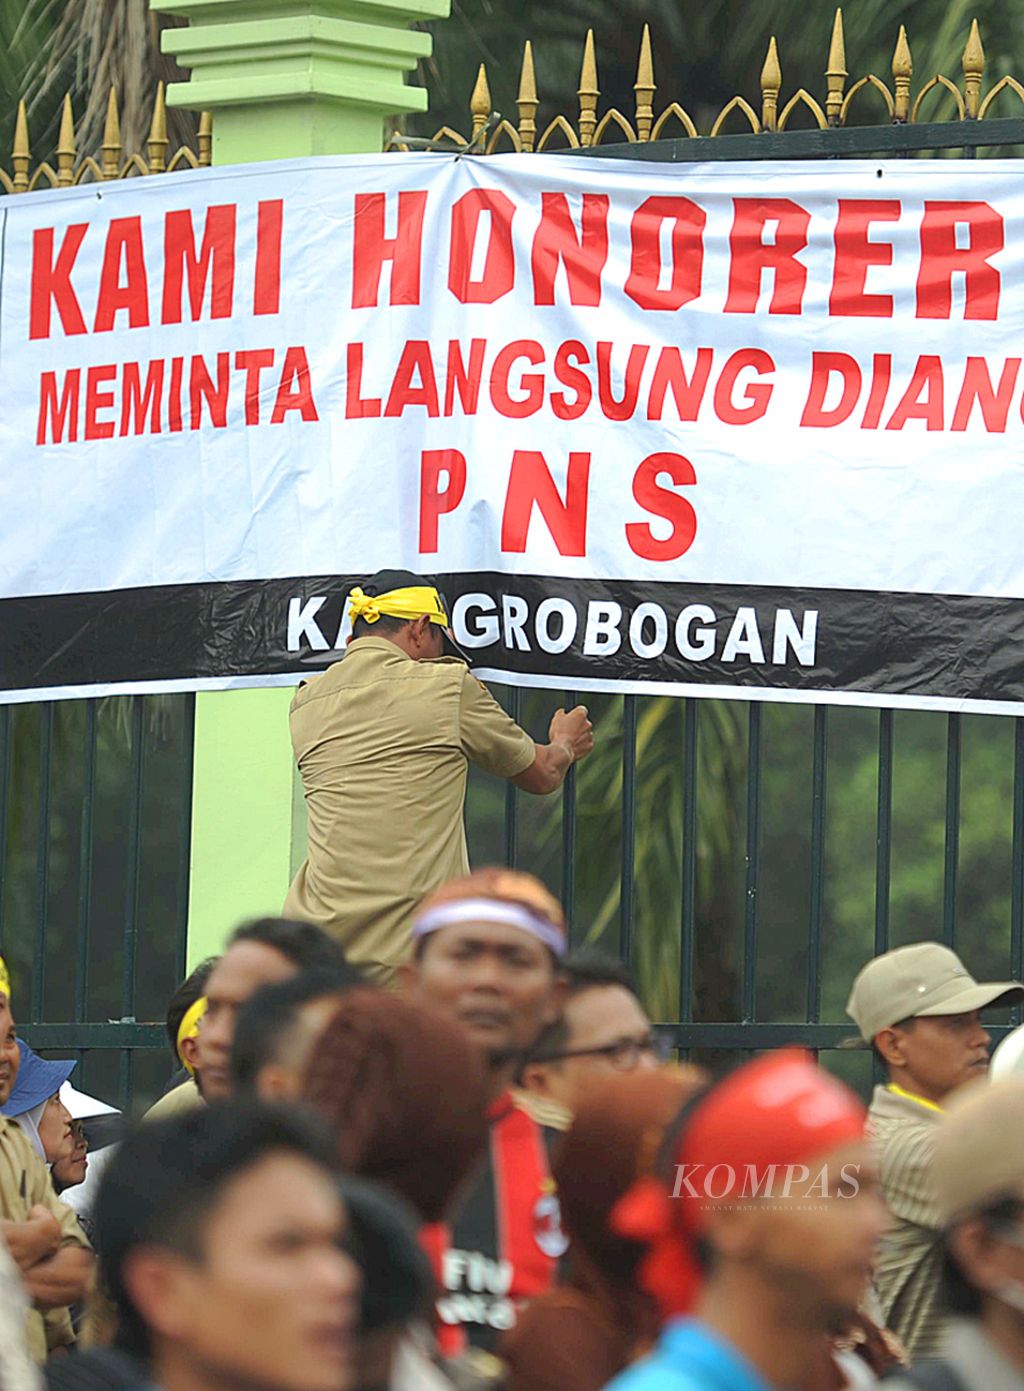 Tenaga honorer dari berbagai instansi di seluruh Indonesia kembali berunjuk rasa di depan gedung DPR/MPR Jakarta, Jumat (14/3/2014). Mereka menuntut kepada anggota Dewan dan pemerintah untuk memperjuangkan nasib mereka dengan mengangkat tenaga honorer menjadi pegawai negeri sipil.